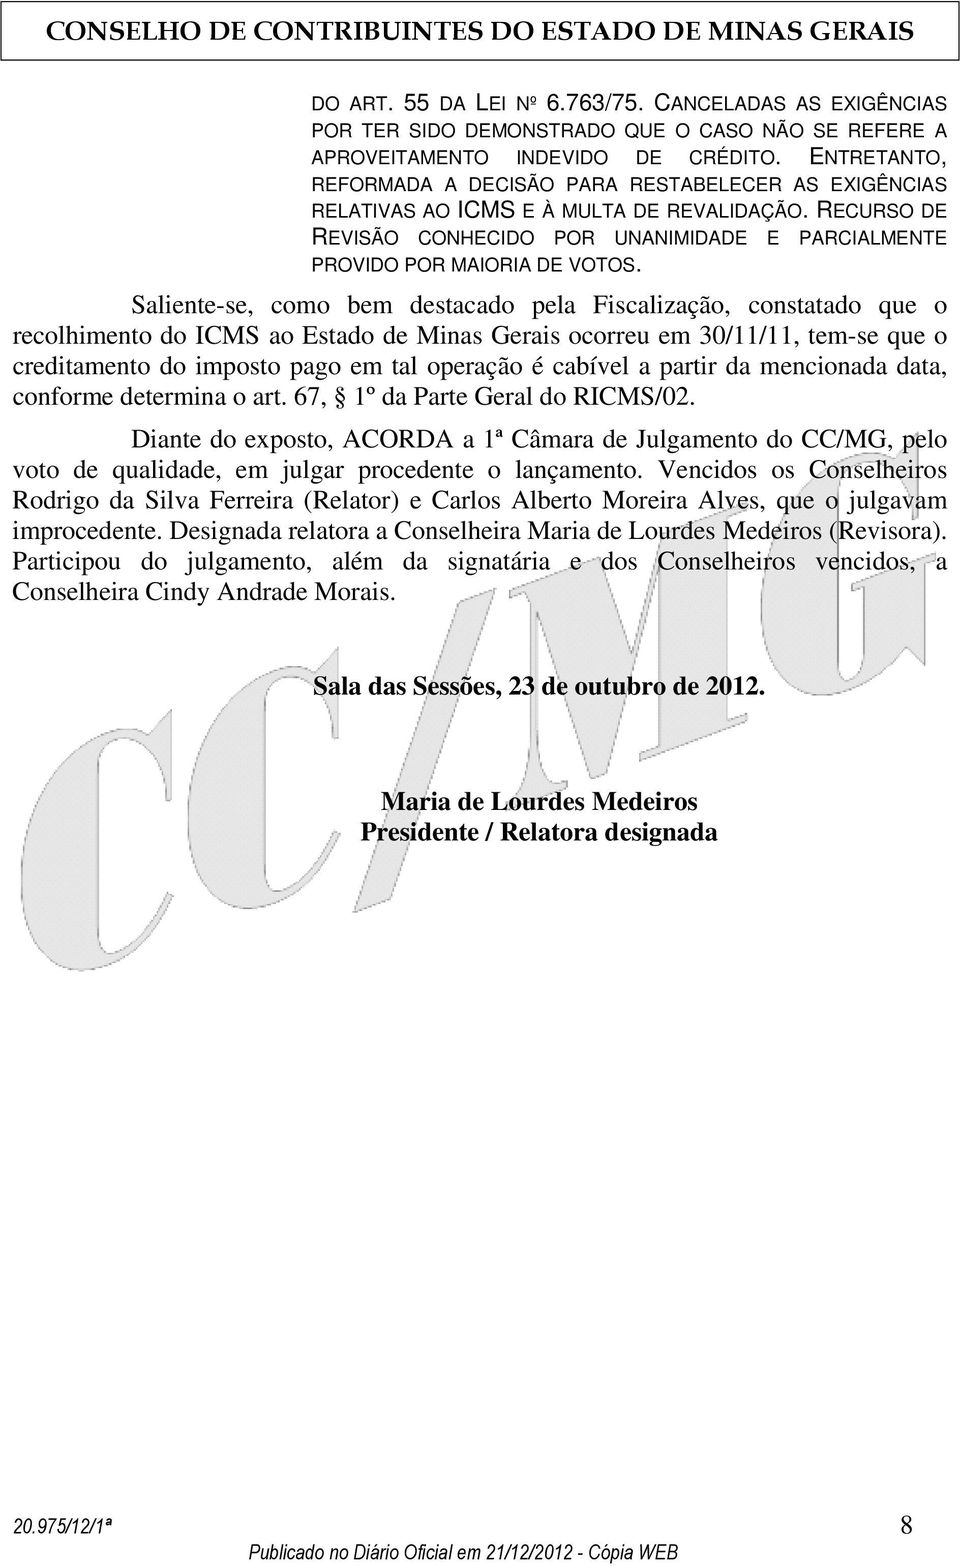 Saliente-se, como bem destacado pela Fiscalização, constatado que o recolhimento do ICMS ao Estado de Minas Gerais ocorreu em 30/11/11, tem-se que o creditamento do imposto pago em tal operação é